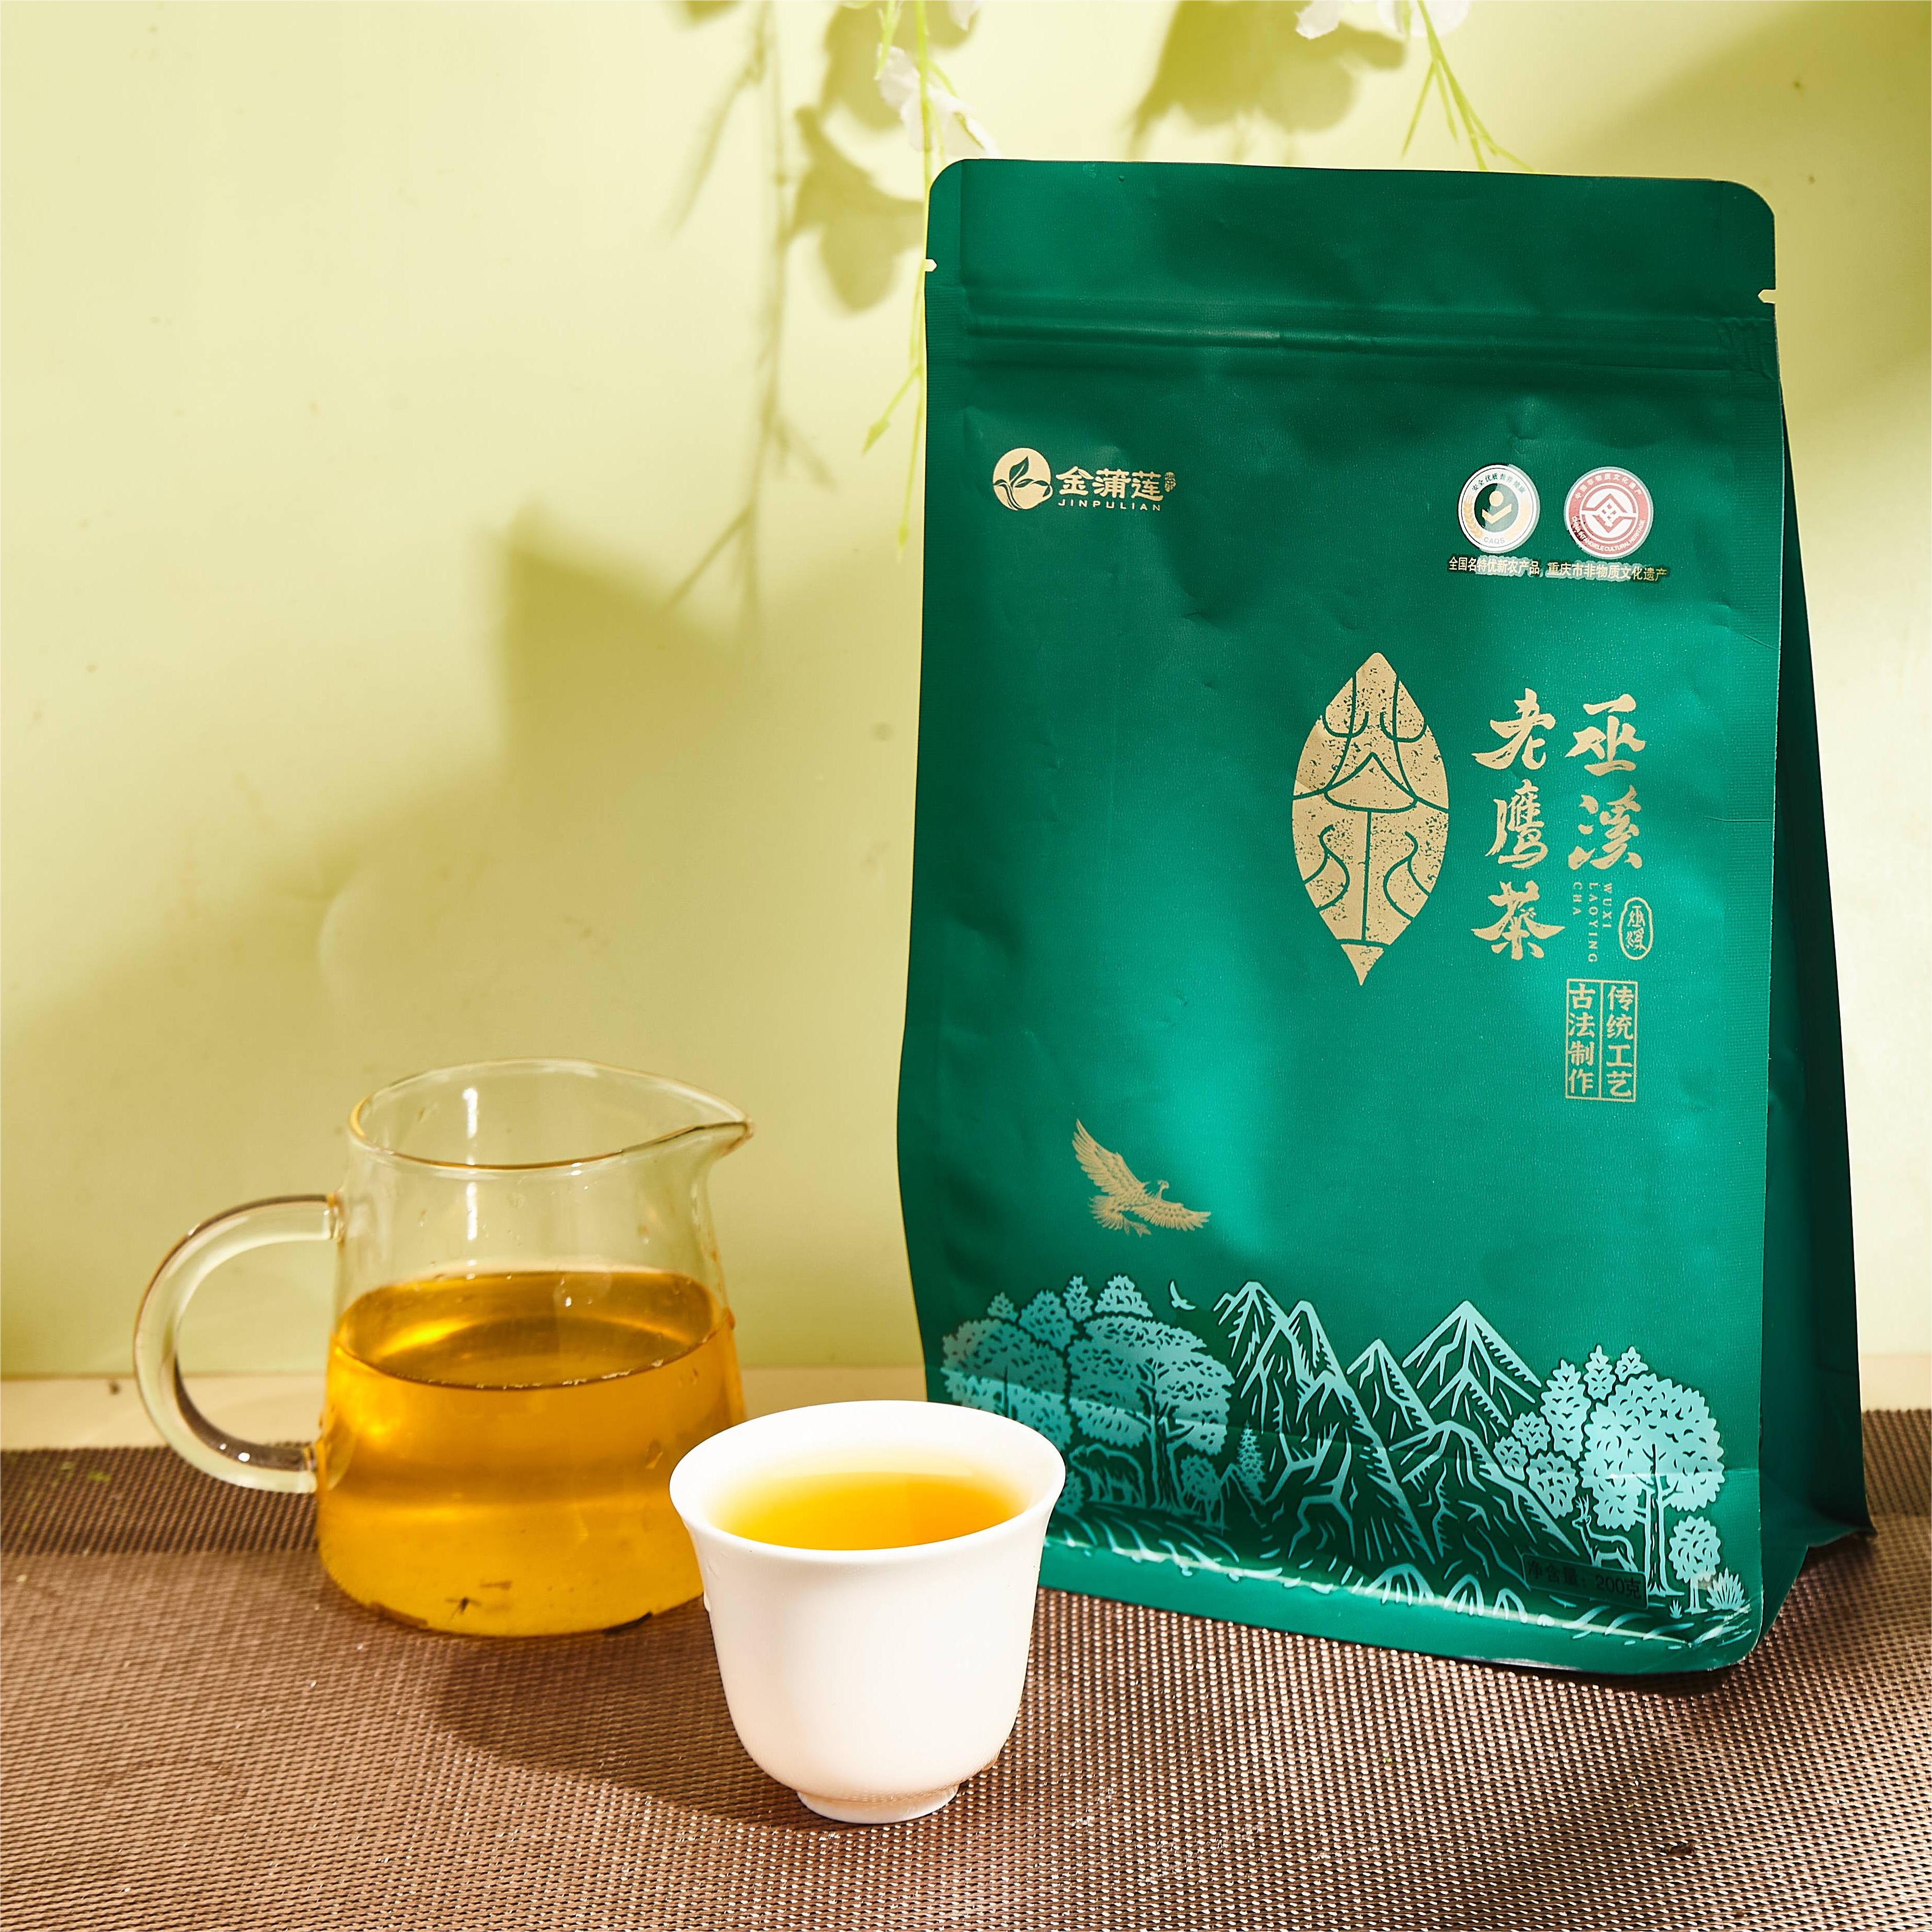 金蒲莲正宗巫溪老鹰茶◆灵溪系列◆200克优质传统工艺高山茶叶